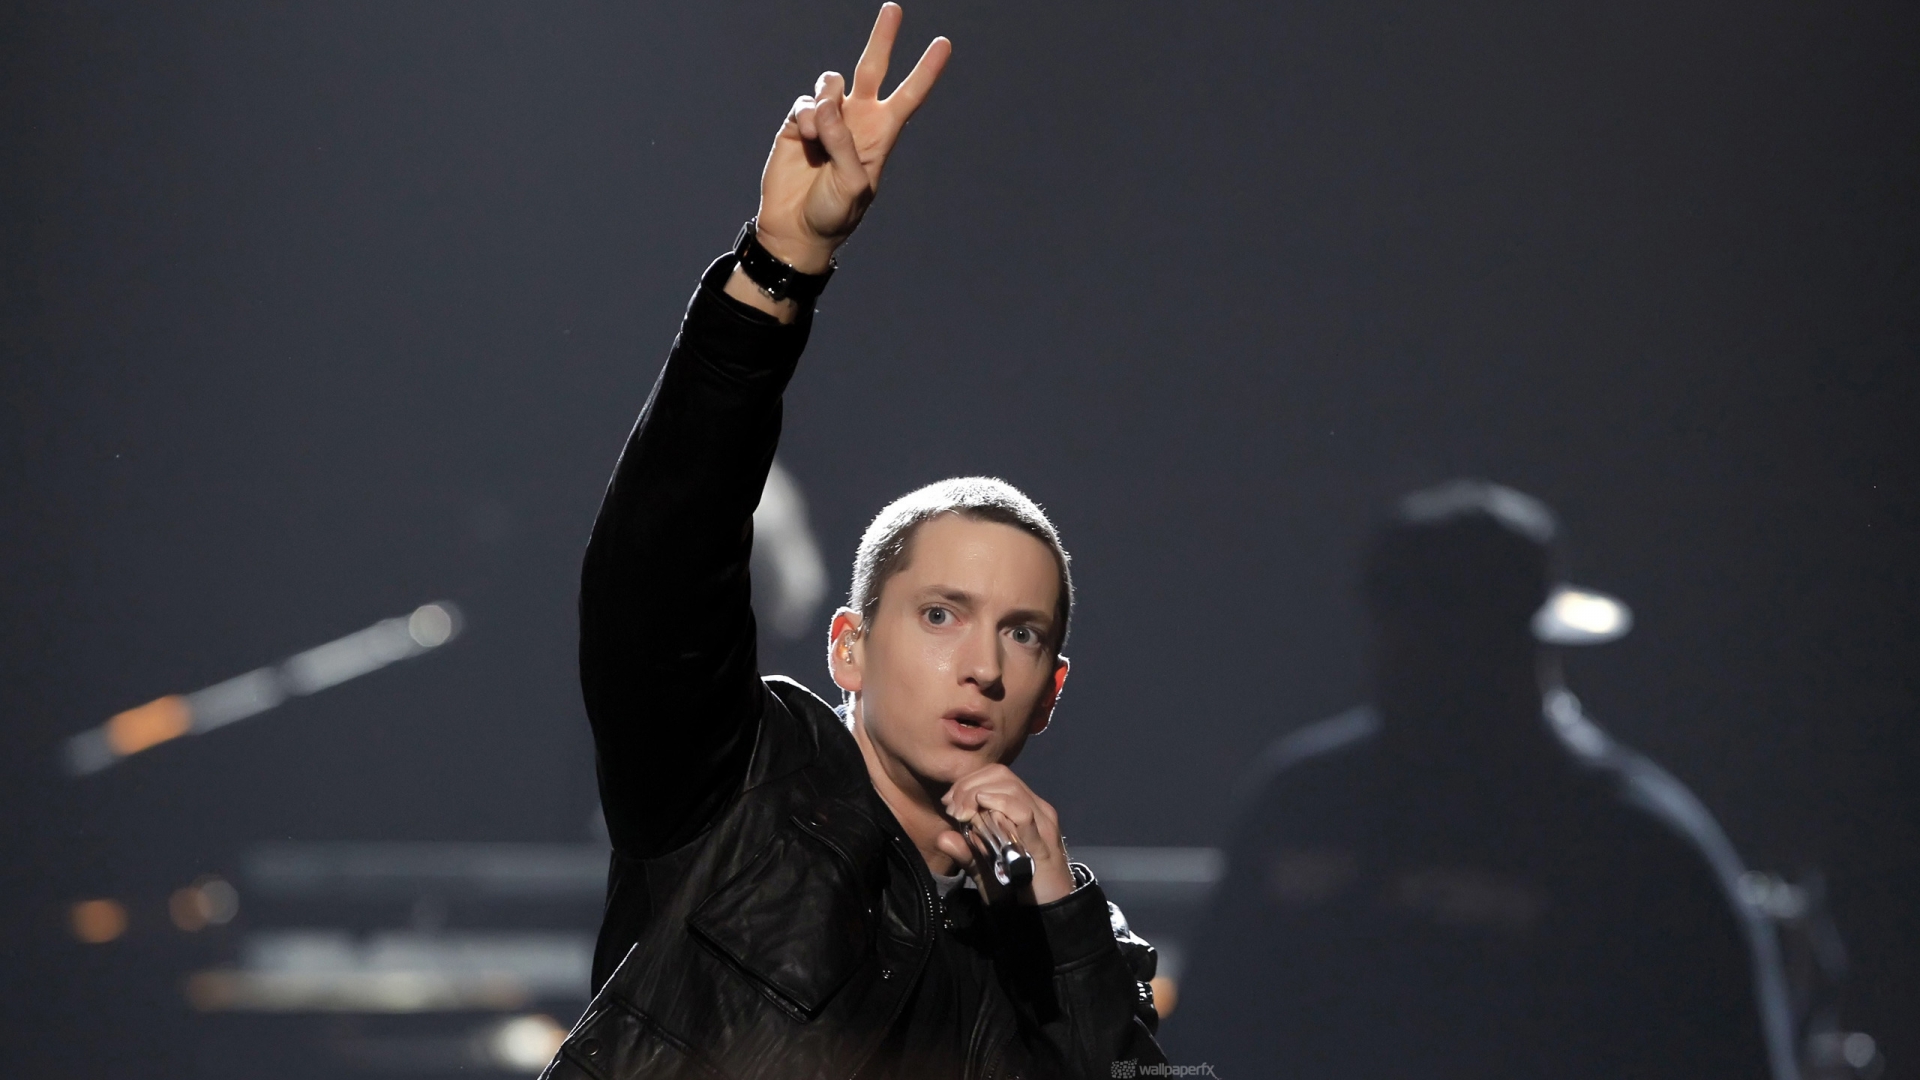 Eminem Peace for 1920 x 1080 HDTV 1080p resolution